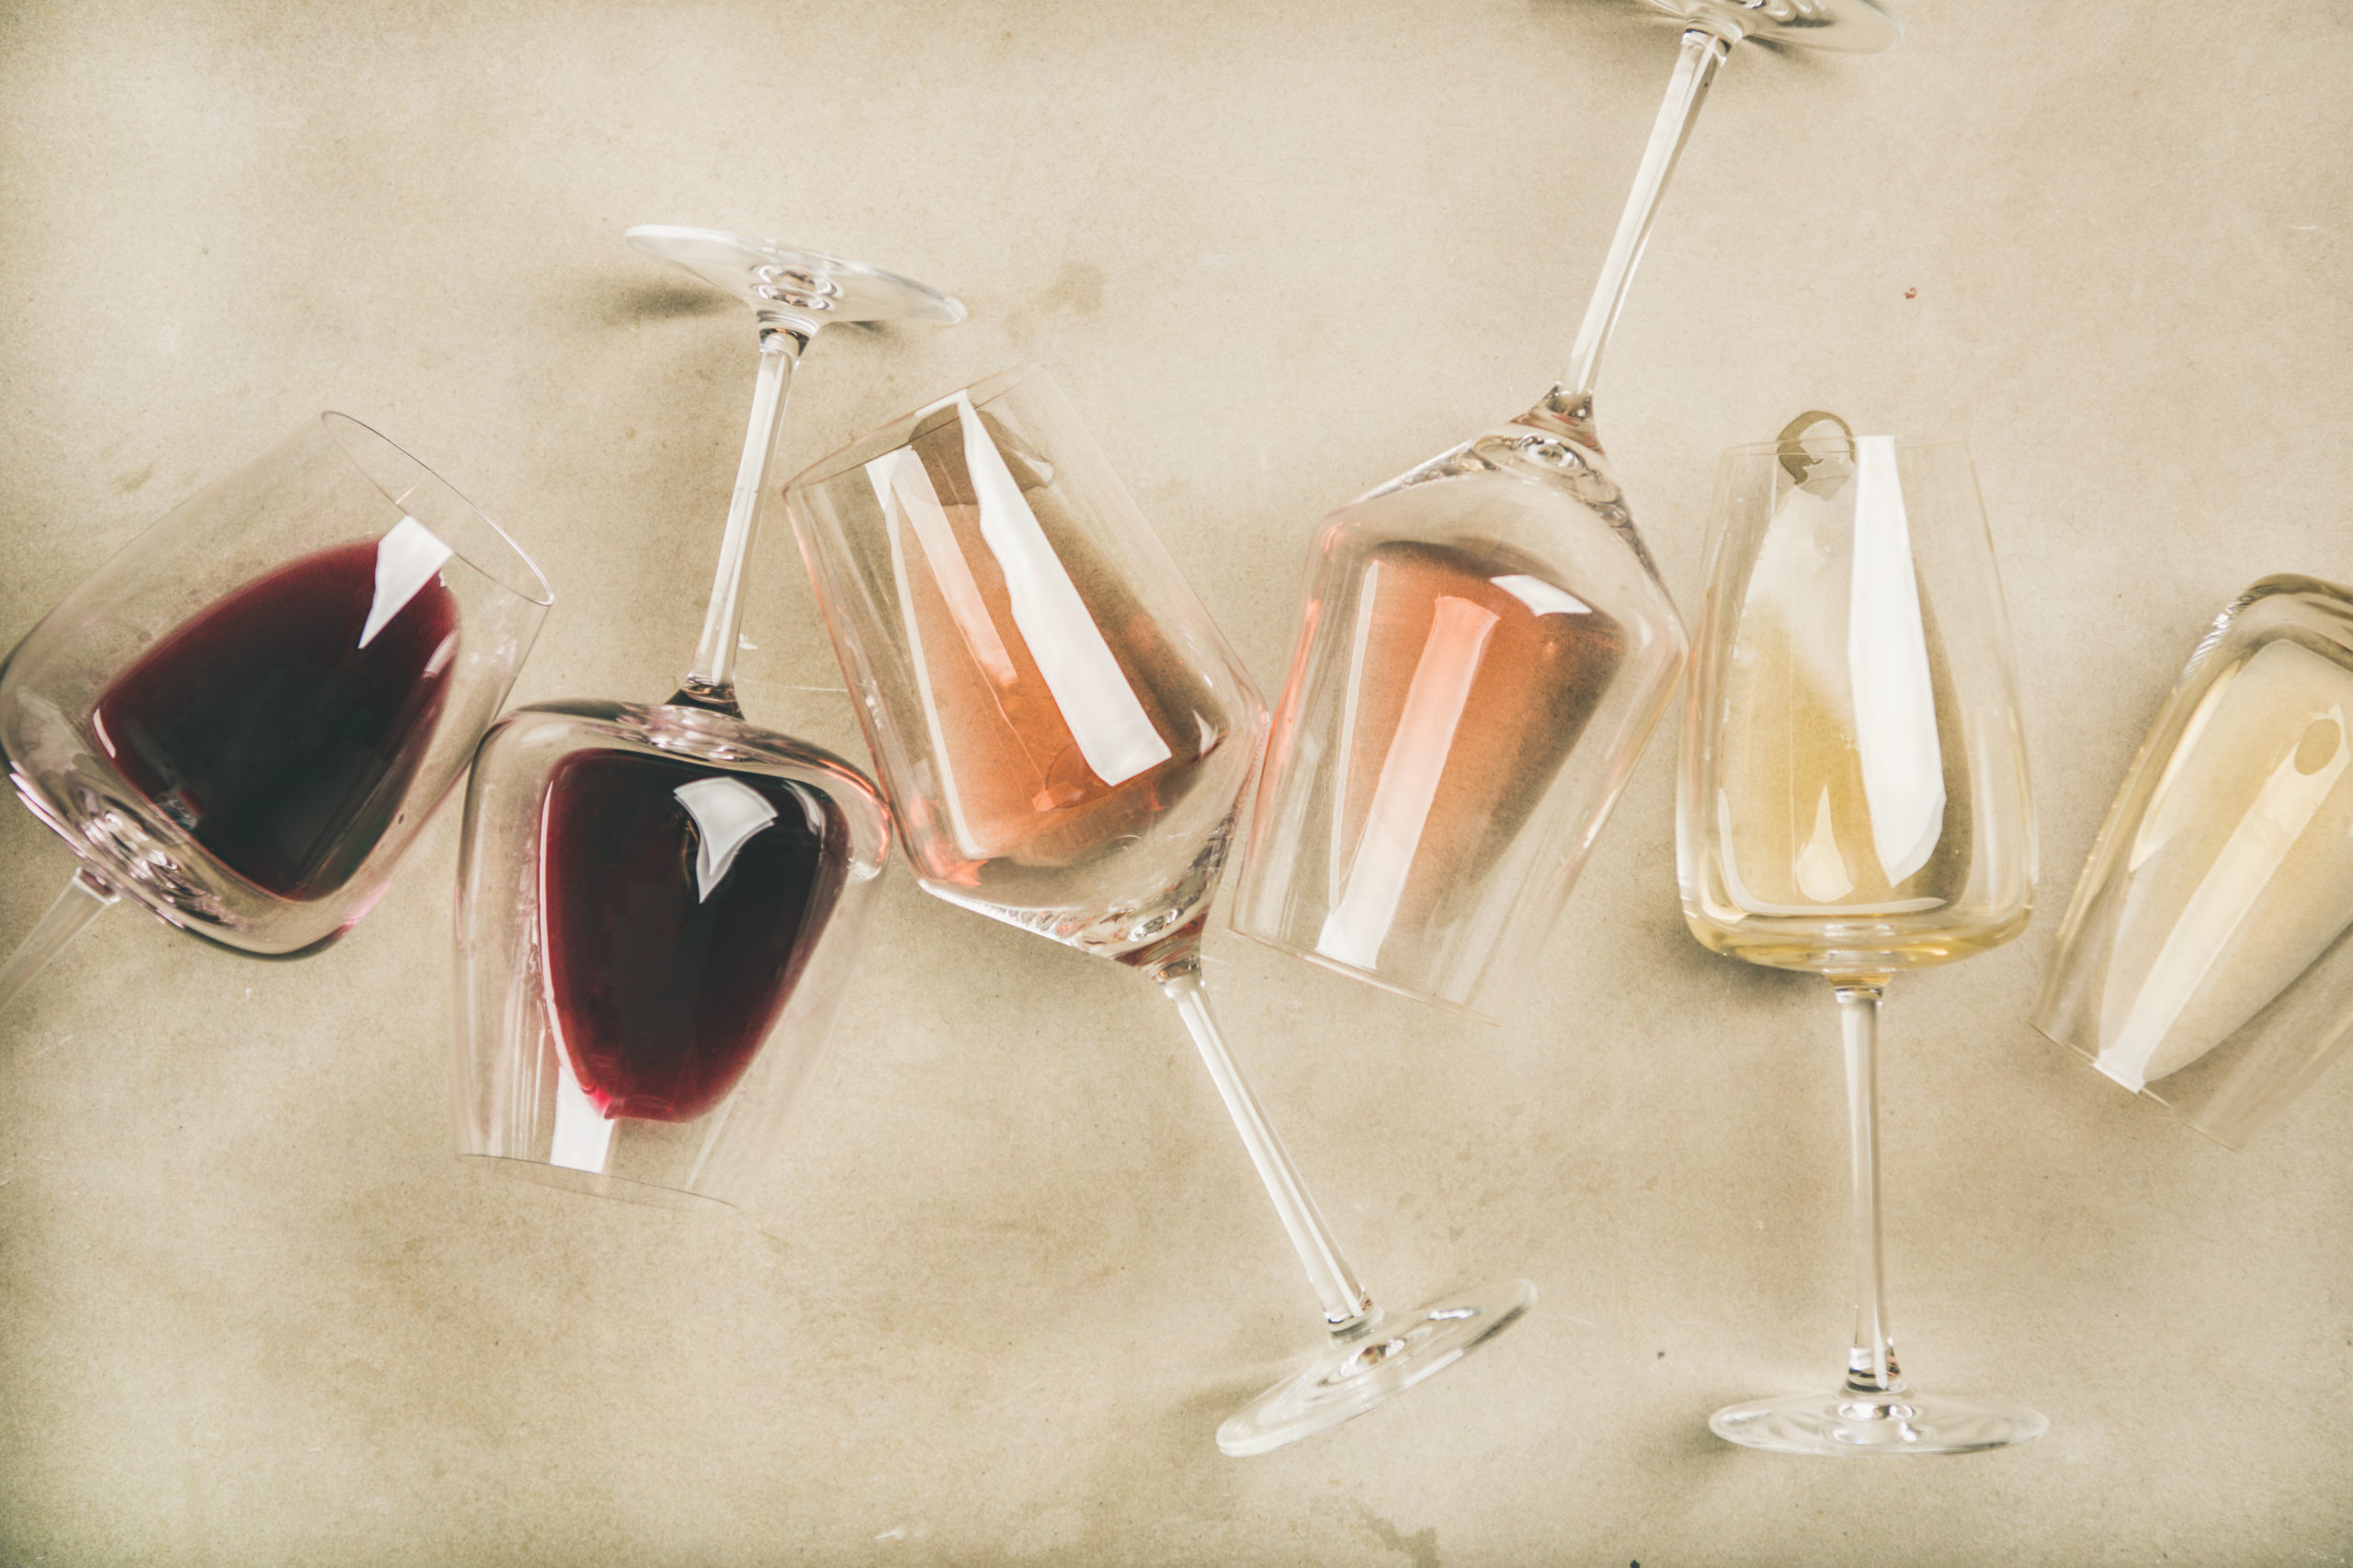 ways to enjoy wine